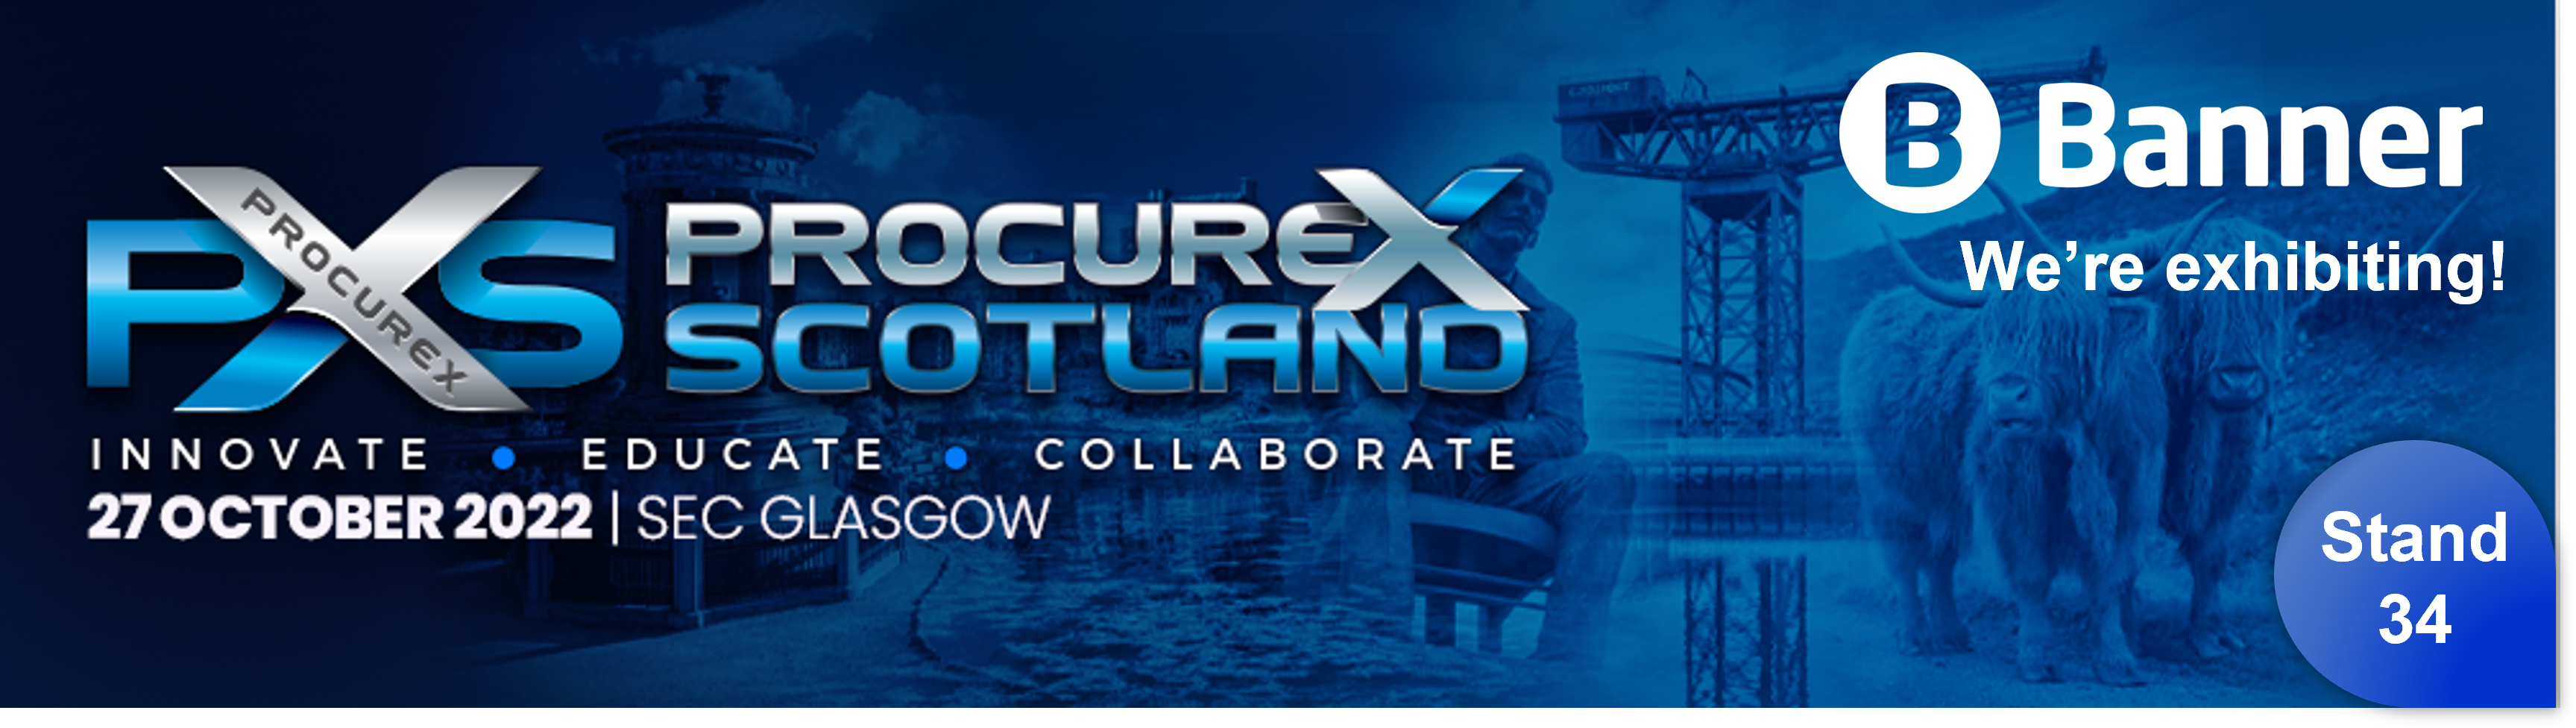 Procurex Scotland banner - email and blog